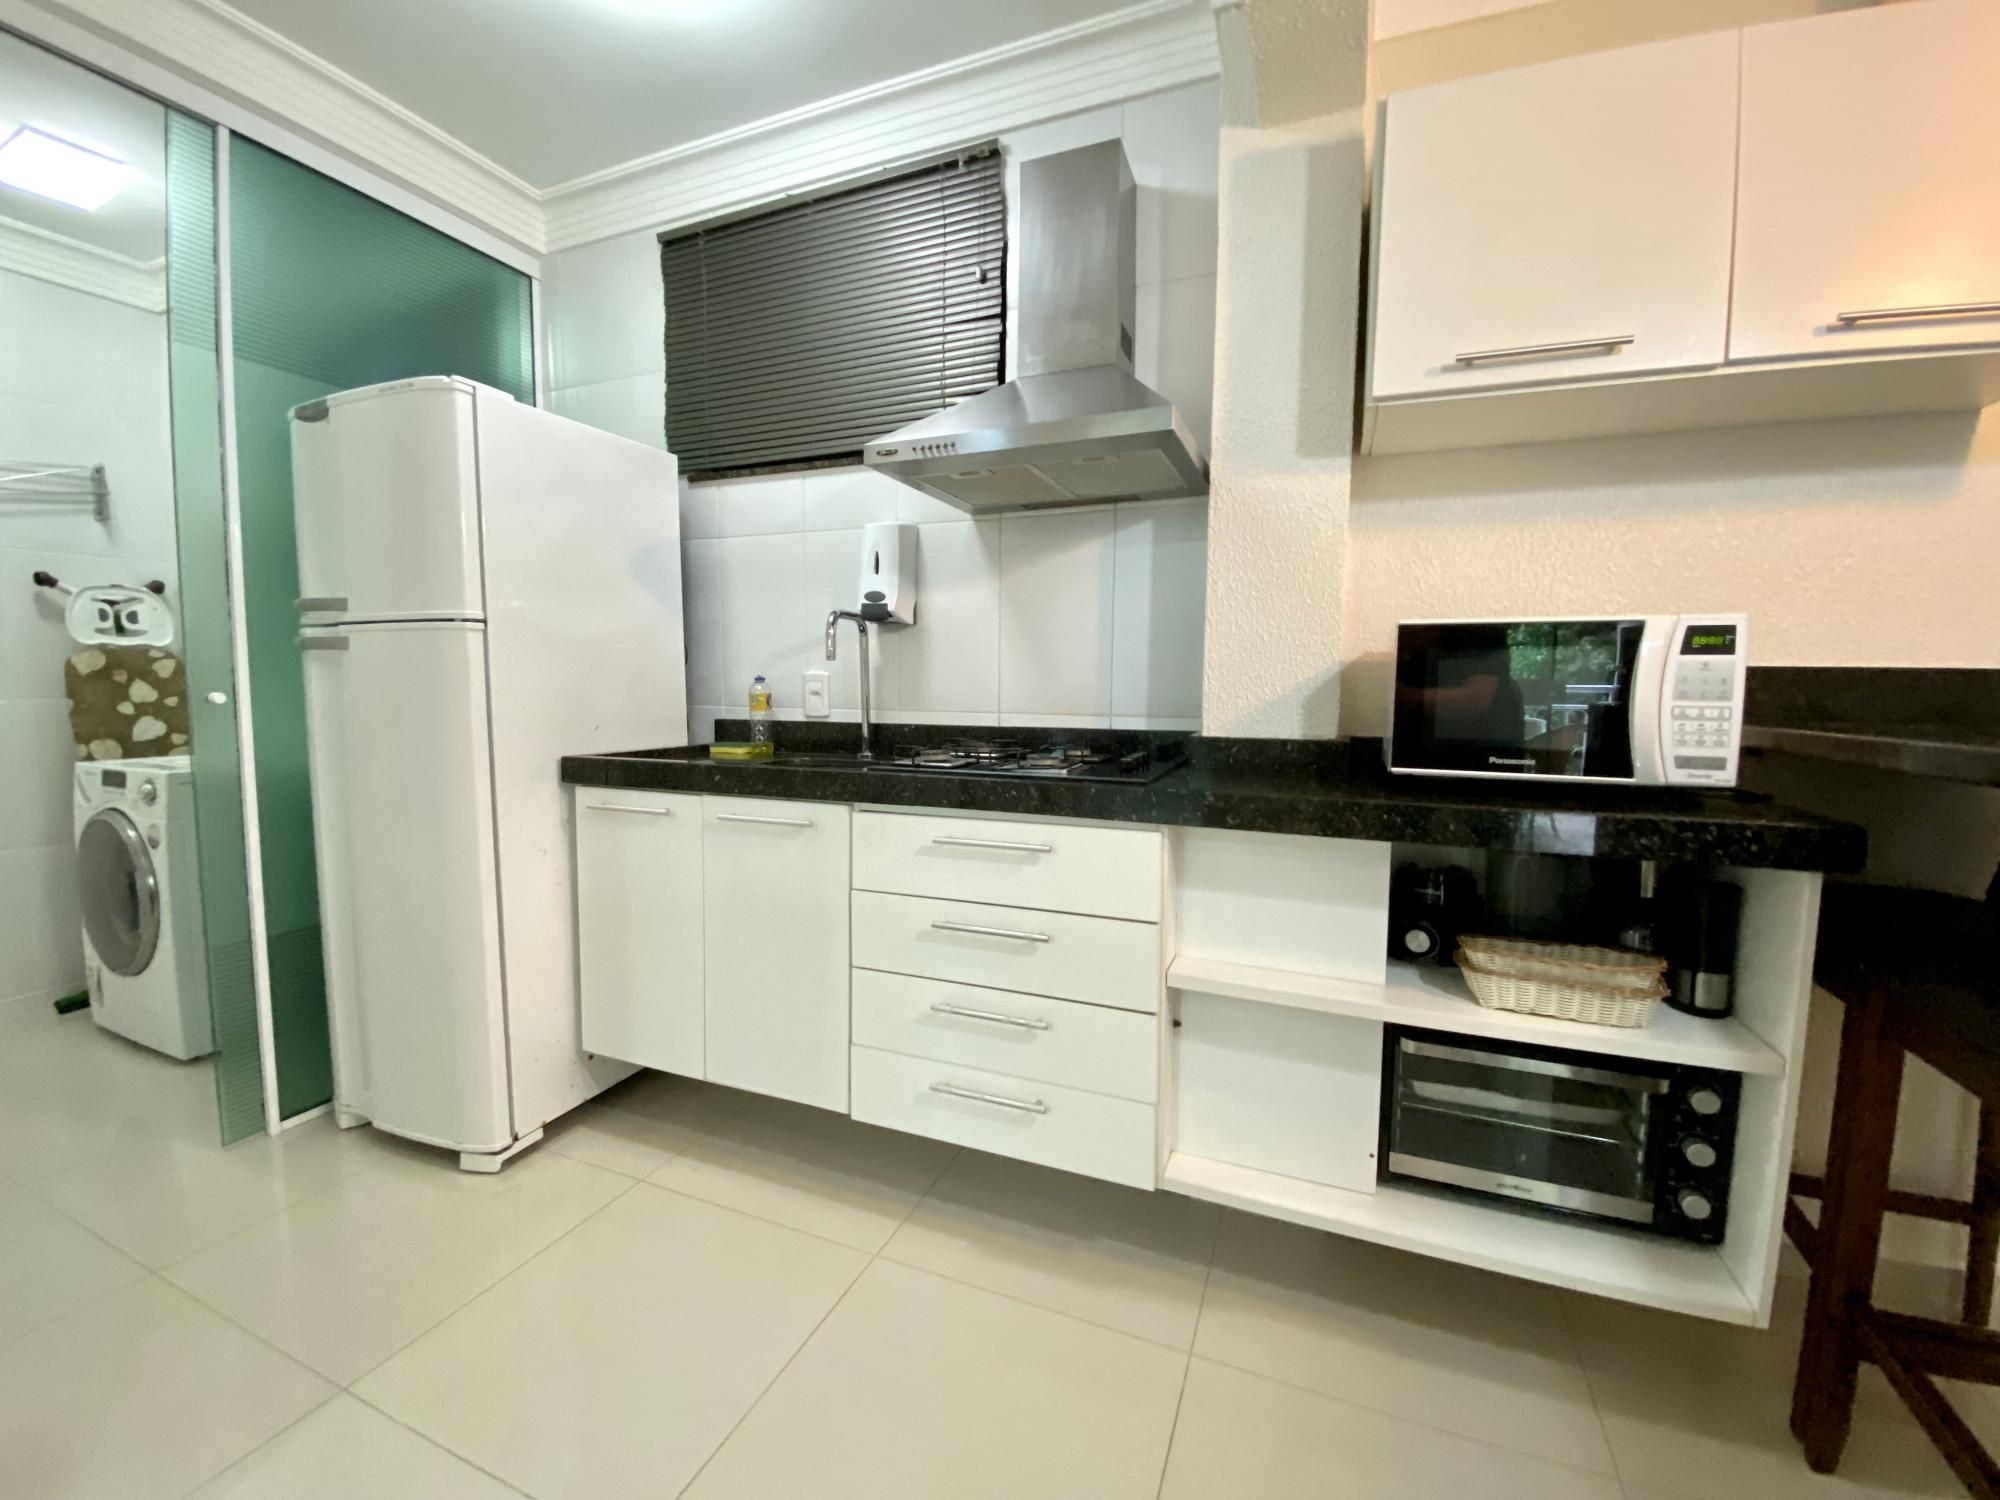 Apartamento com 1 Dormitórios para alugar, 44 m² por R$ 180,00